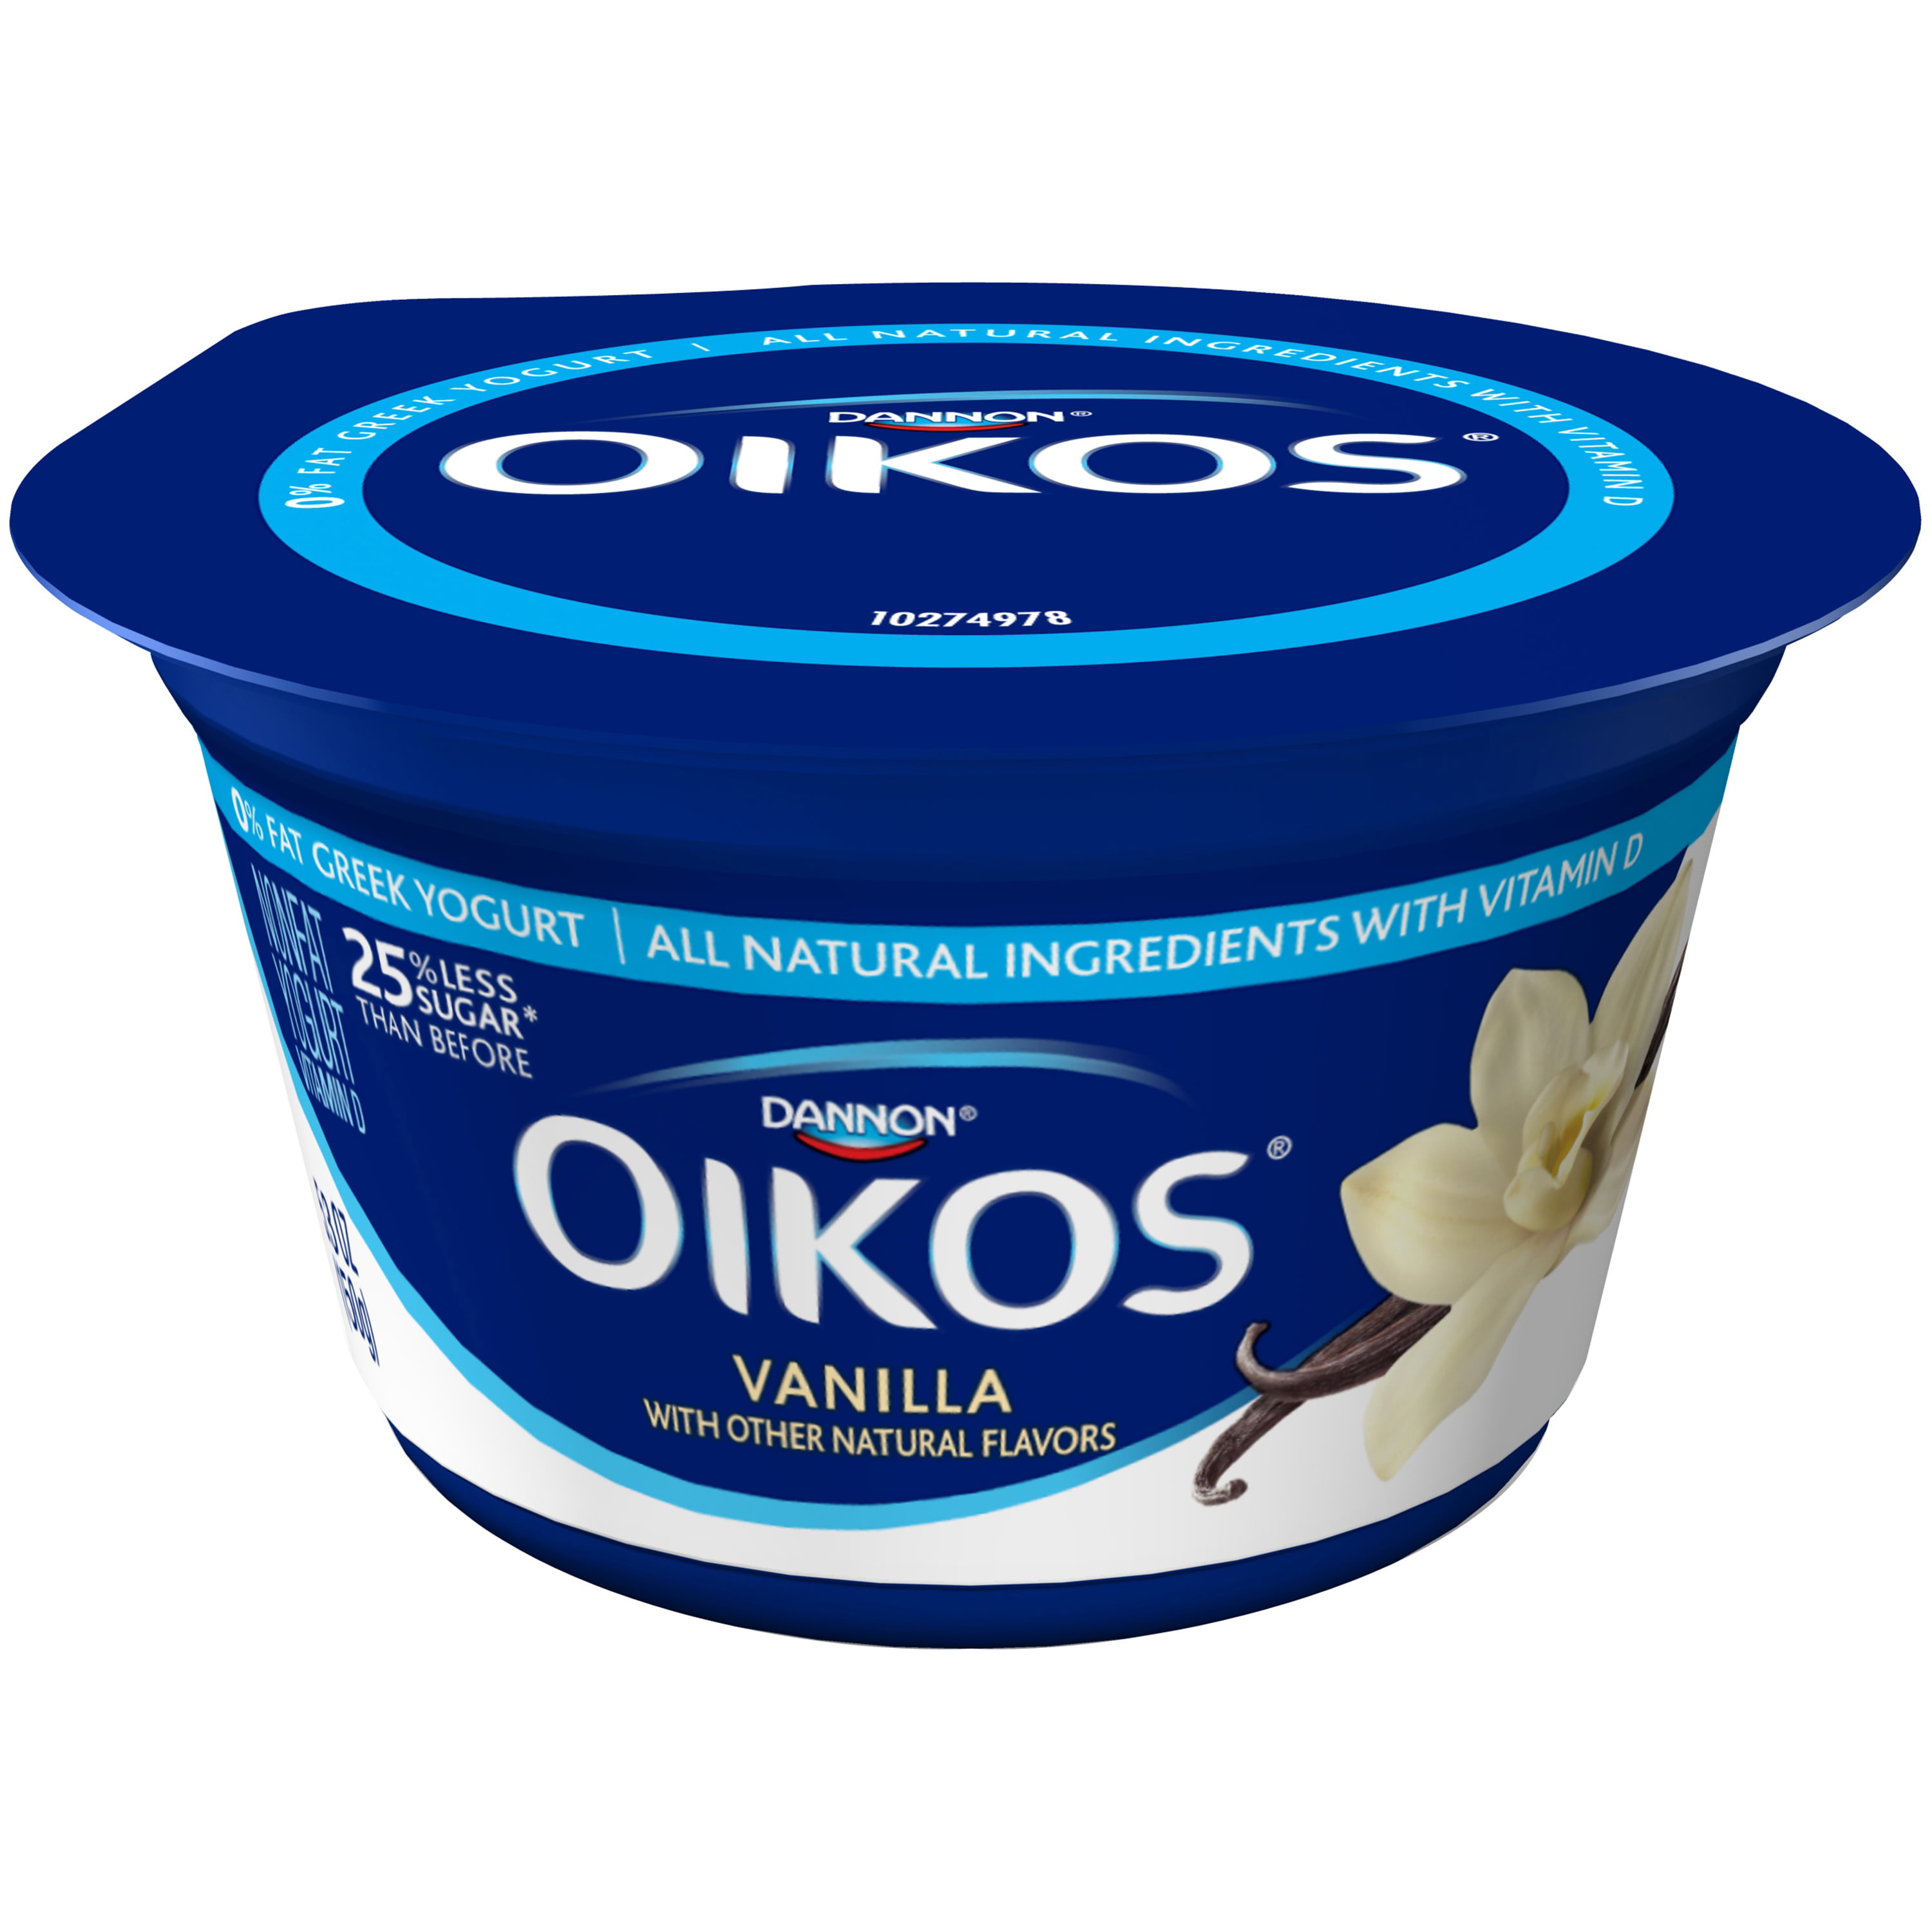 Dannon Oikos Greek Vanilla Yogurt Nutrition Facts ...